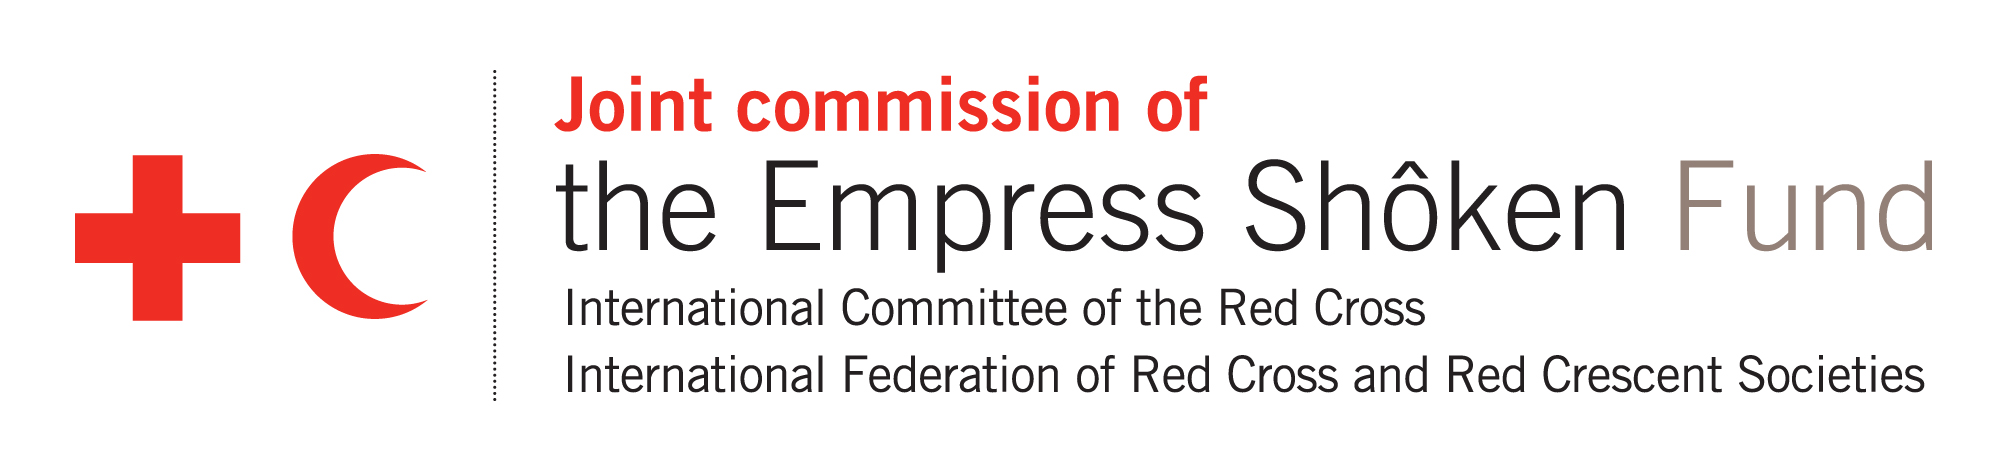 Logotipo de la Comisión Mixta del Fondo de la Emperatriz Shoken